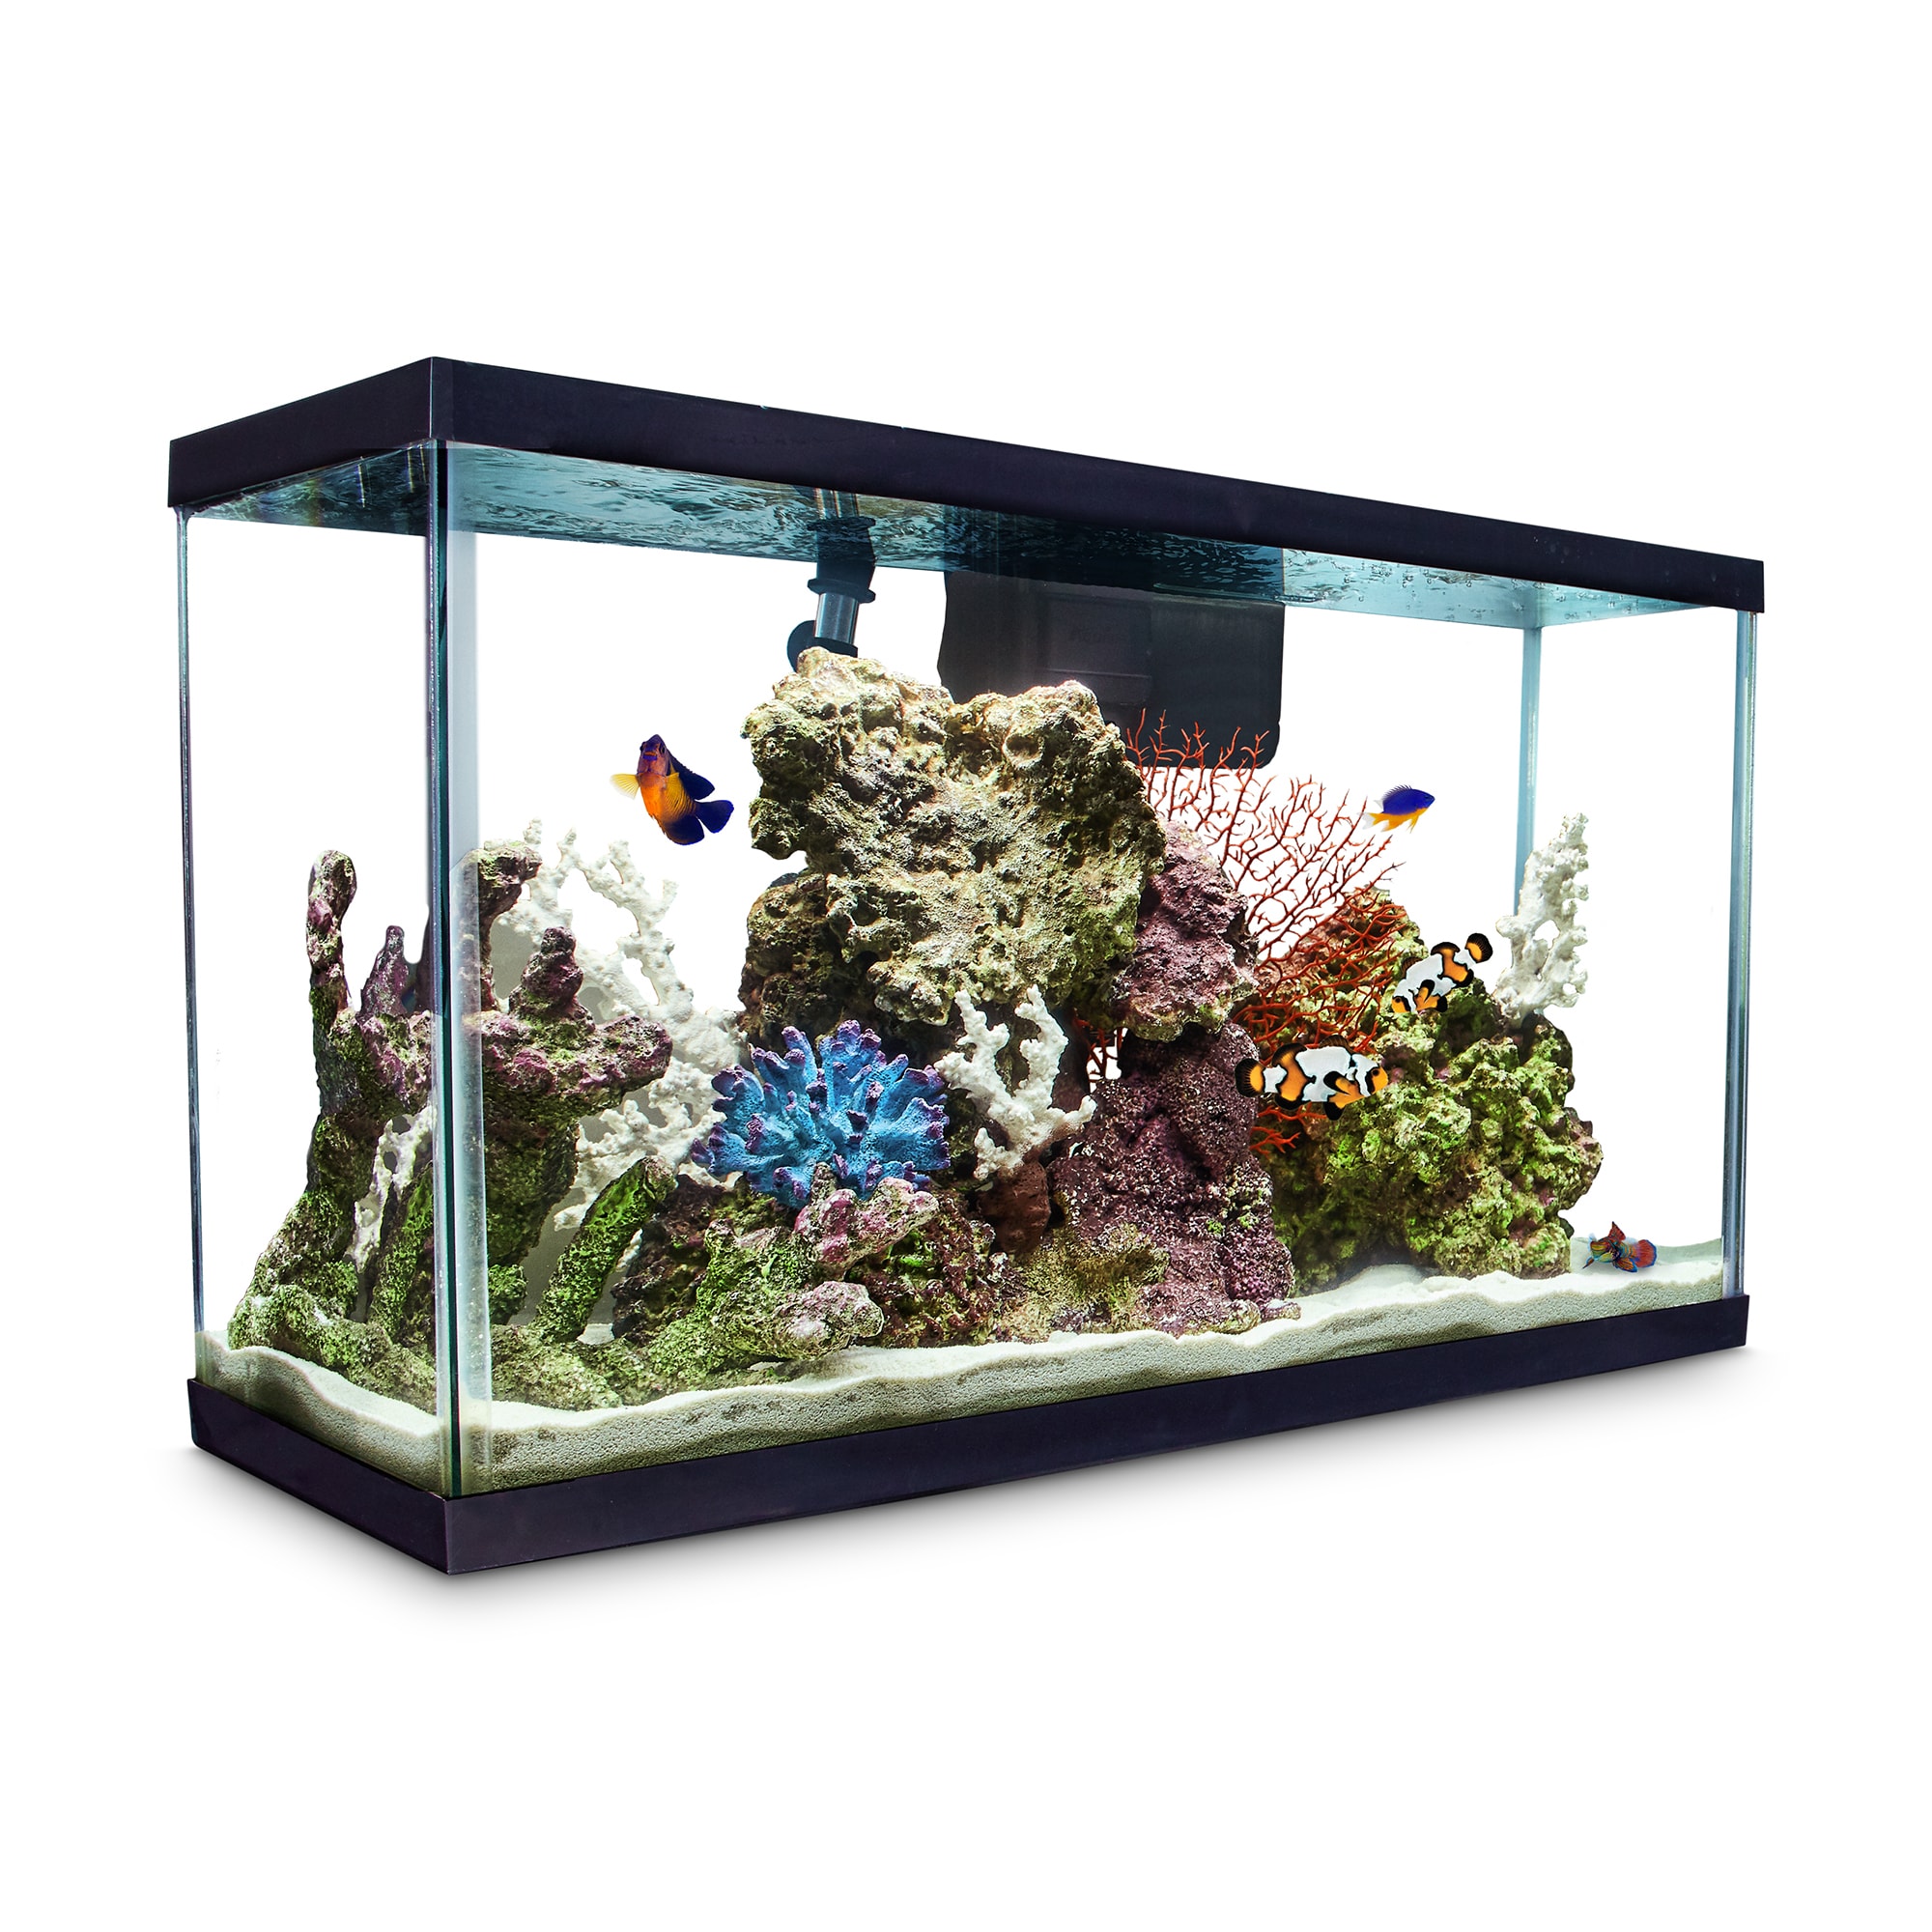 Aqueon Open-Glass Aquarium Tank, 29 Gallon |